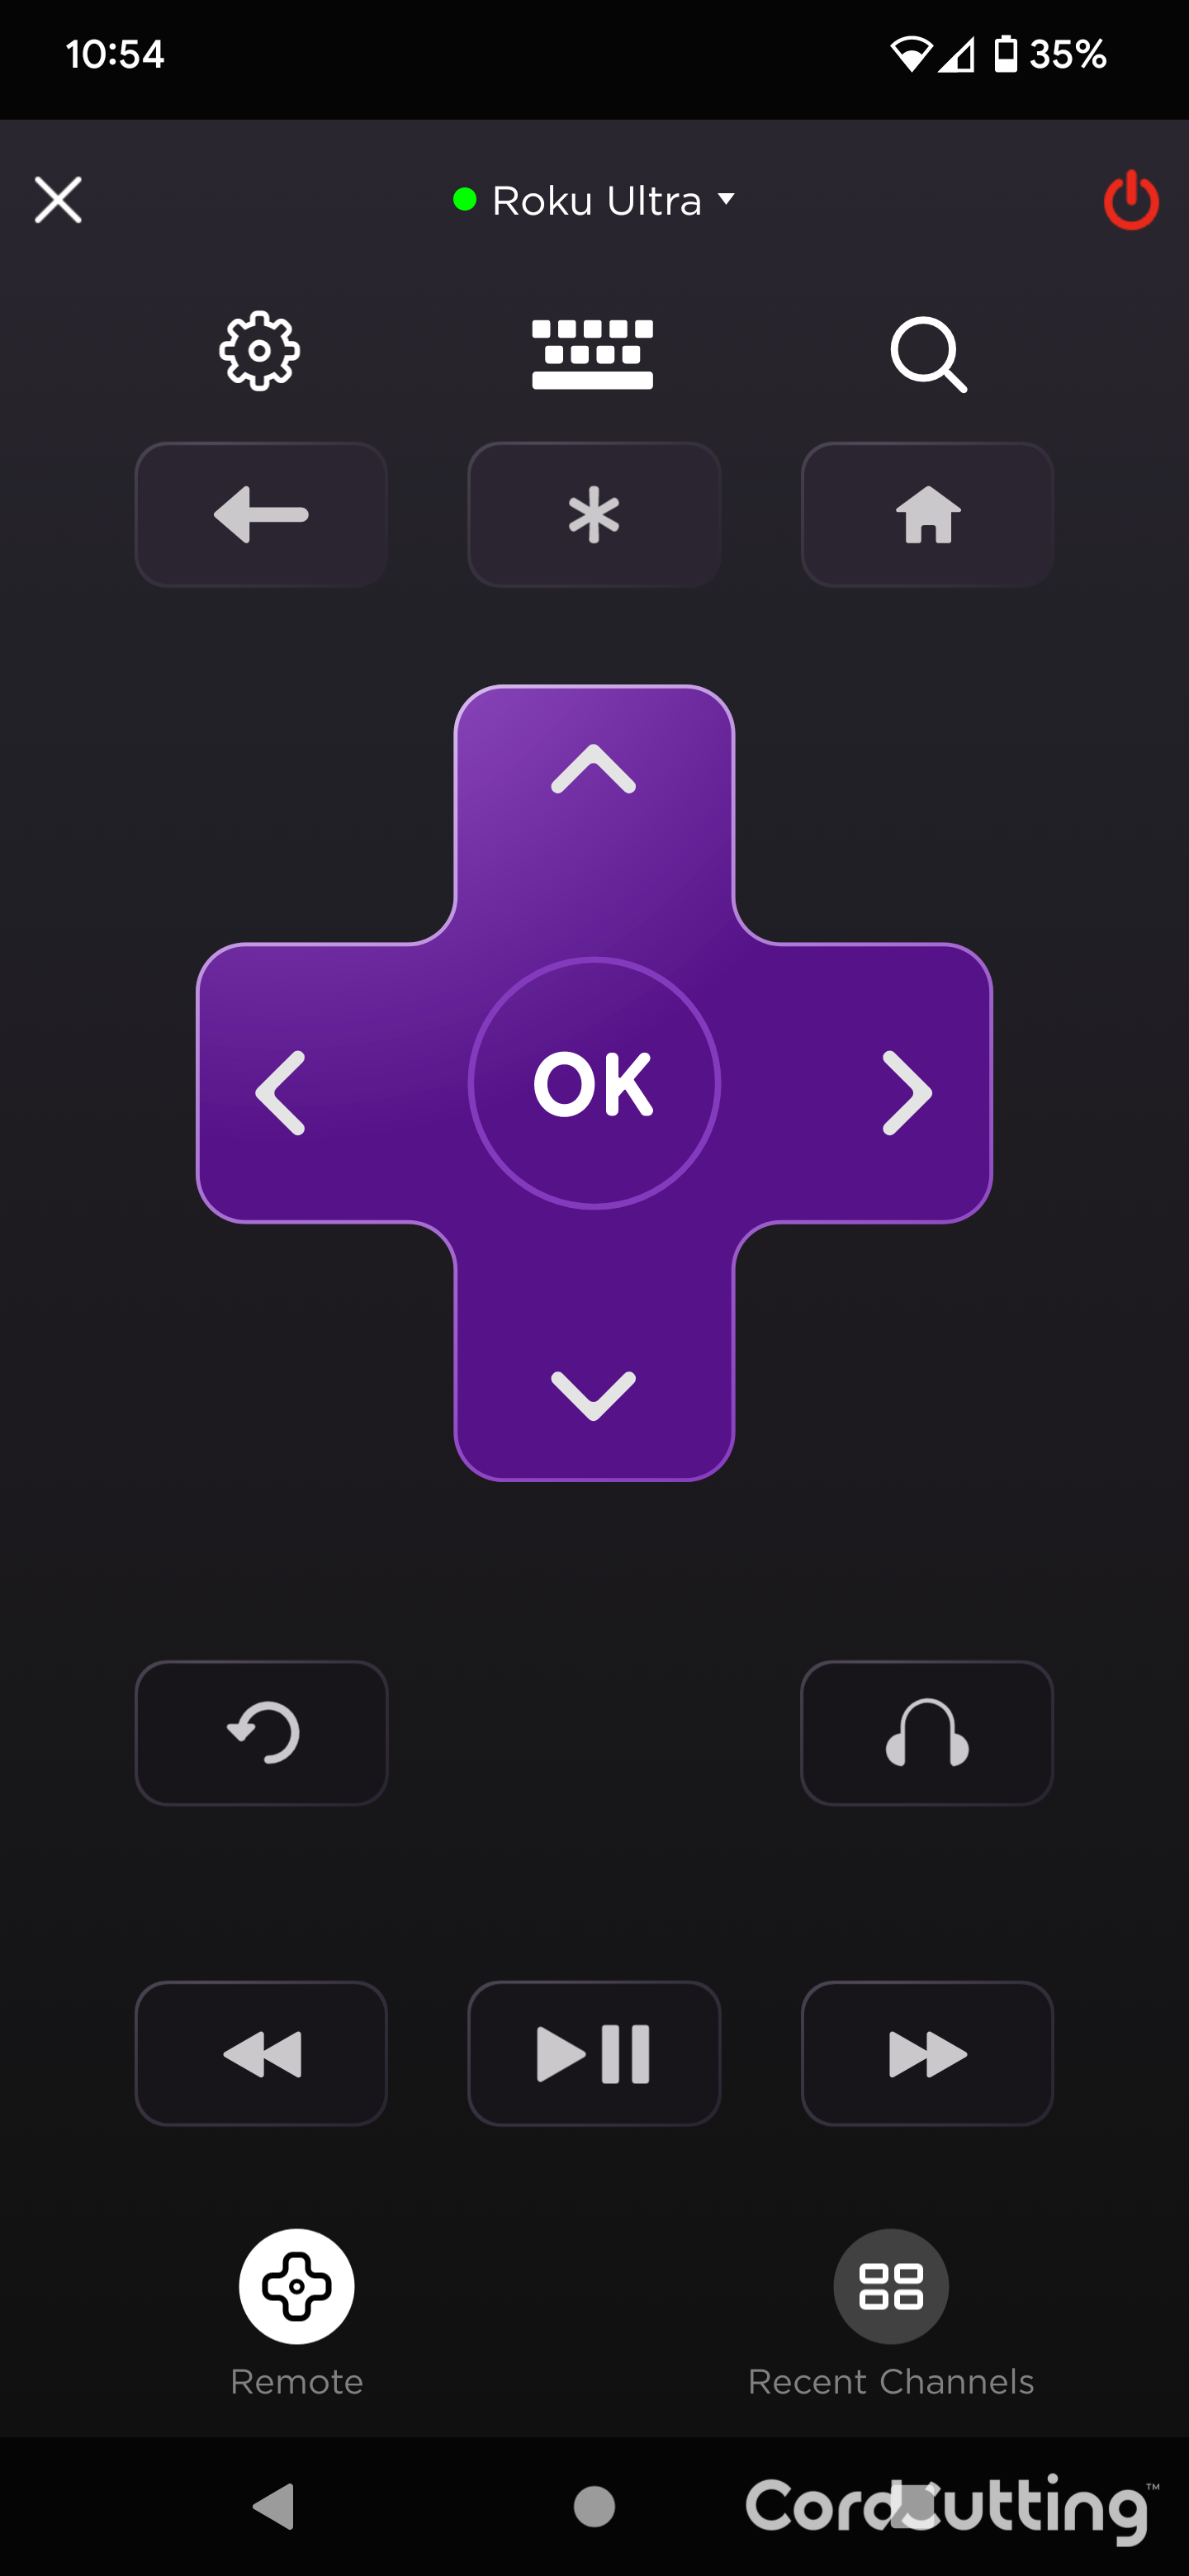 Roku Official Remote App